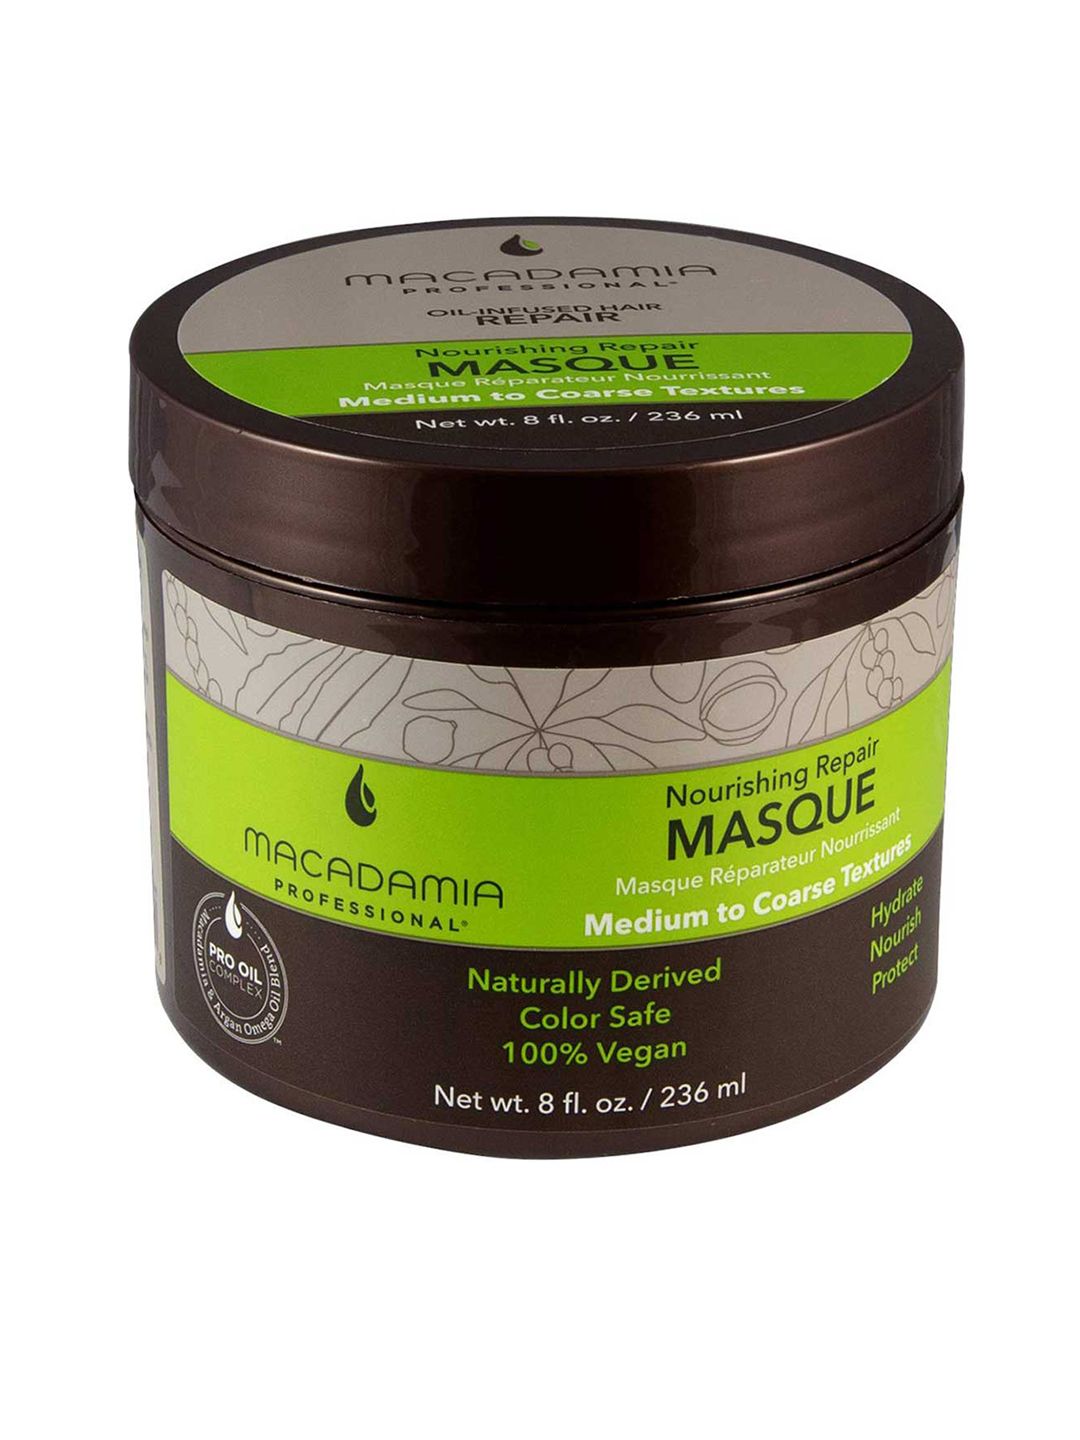 Macadamia Professional Nourishing Repair Masque - 236ml Price in India